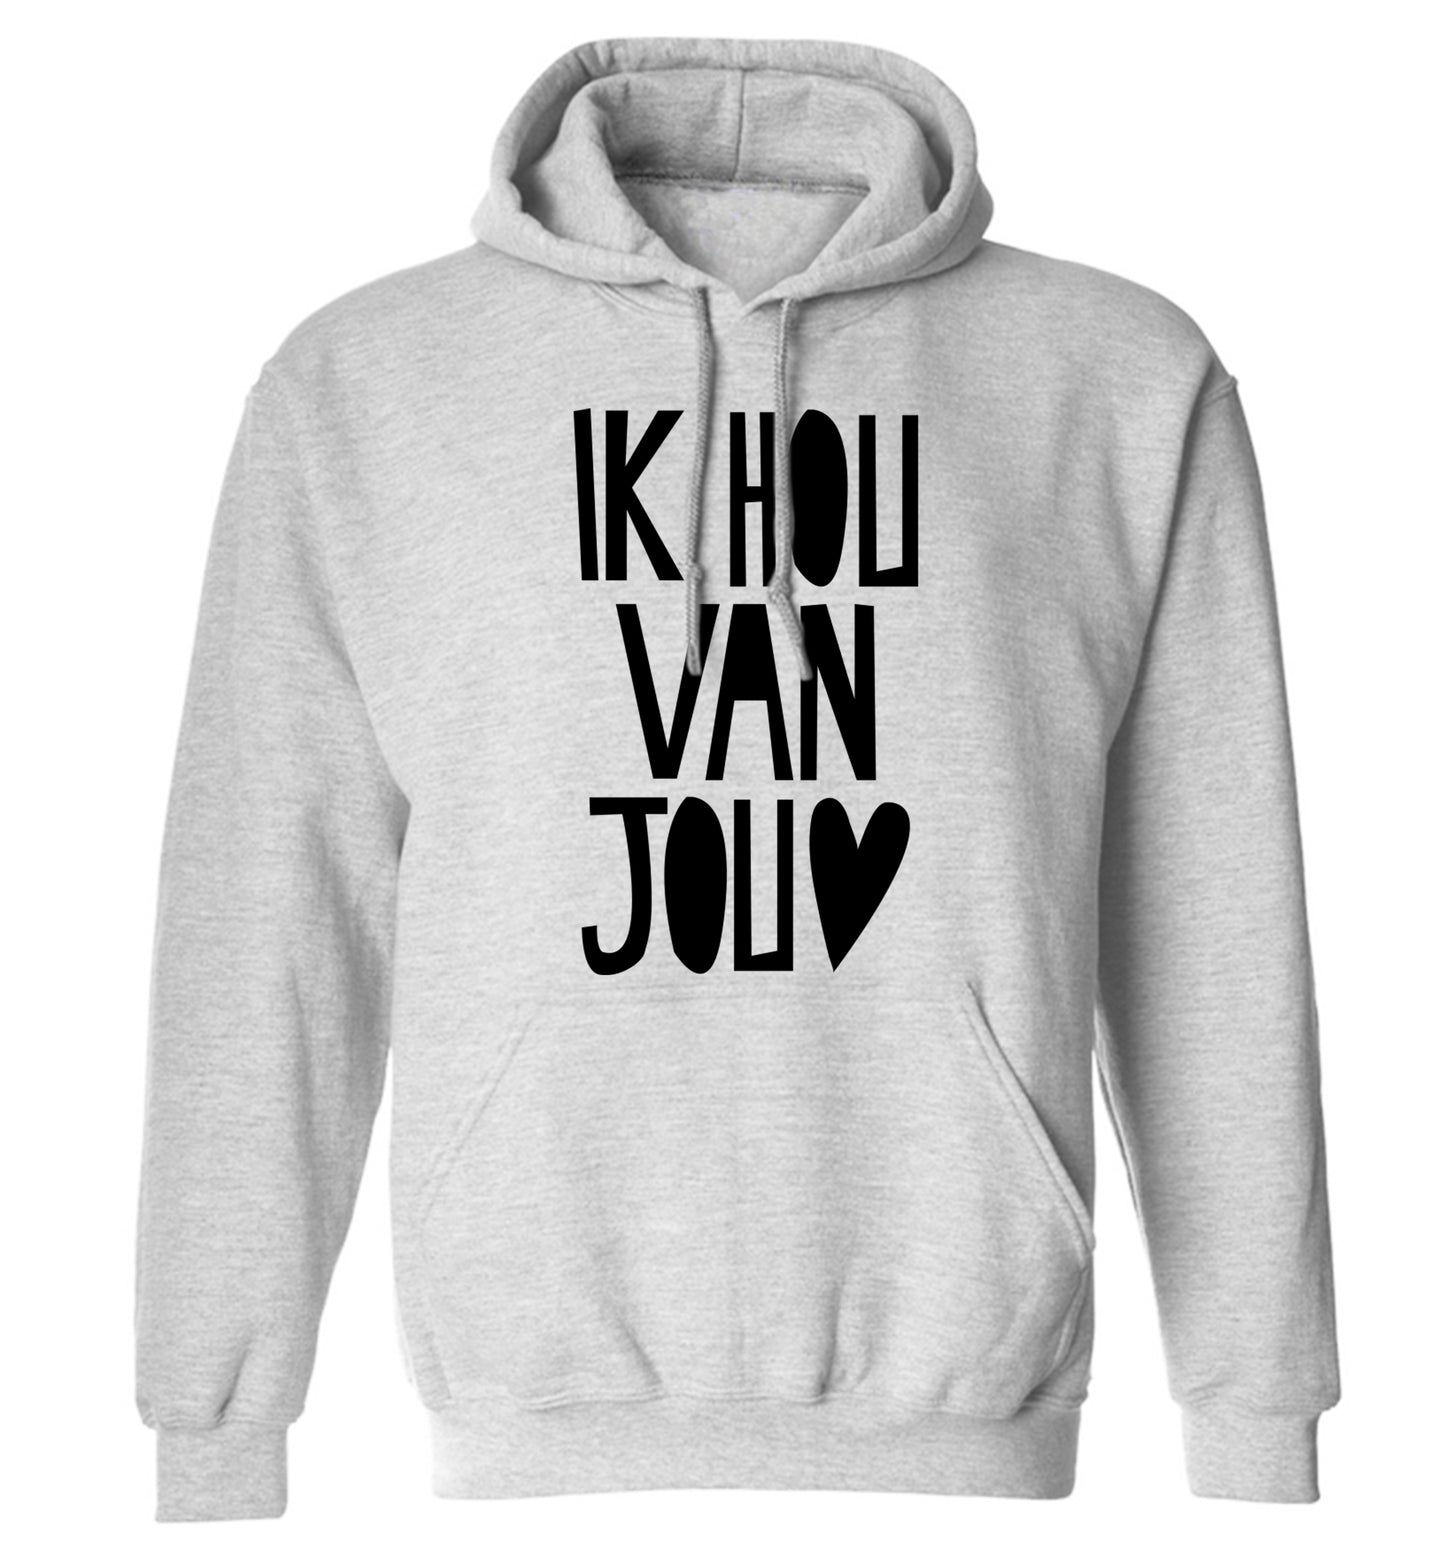 Ik Hau Van Jou - I love you adults unisex grey hoodie 2XL